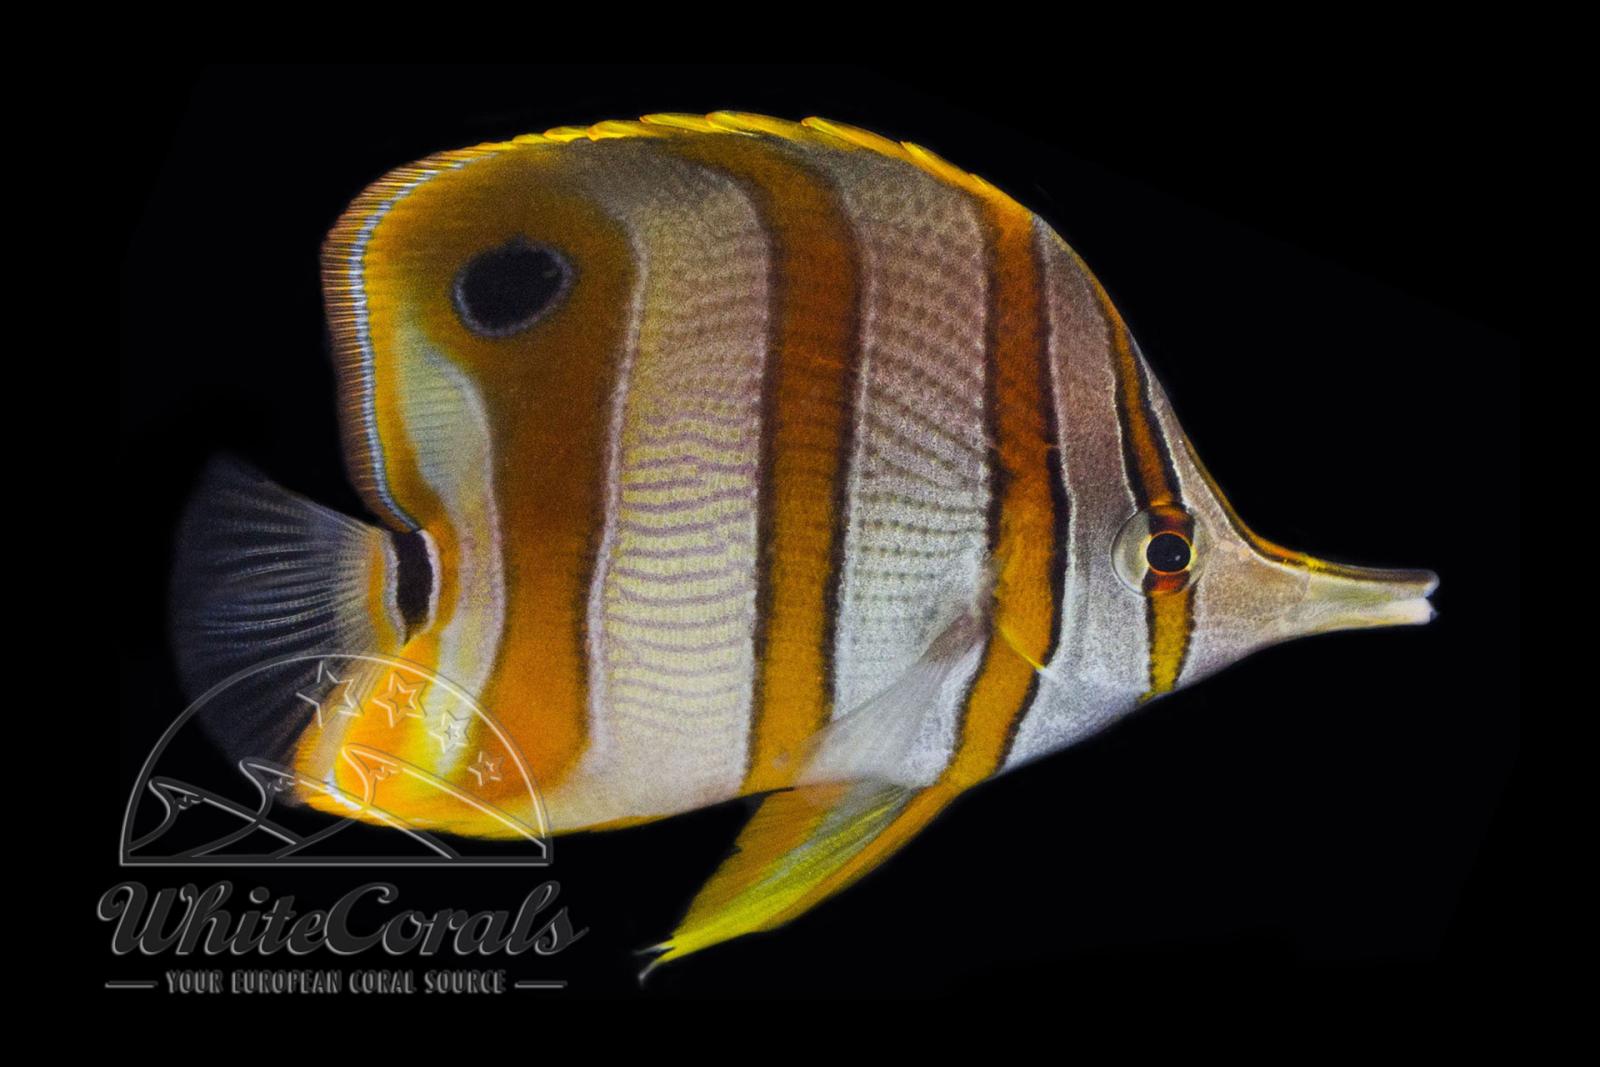 Chelmon rostratus - Orangebinden Pinzettfisch